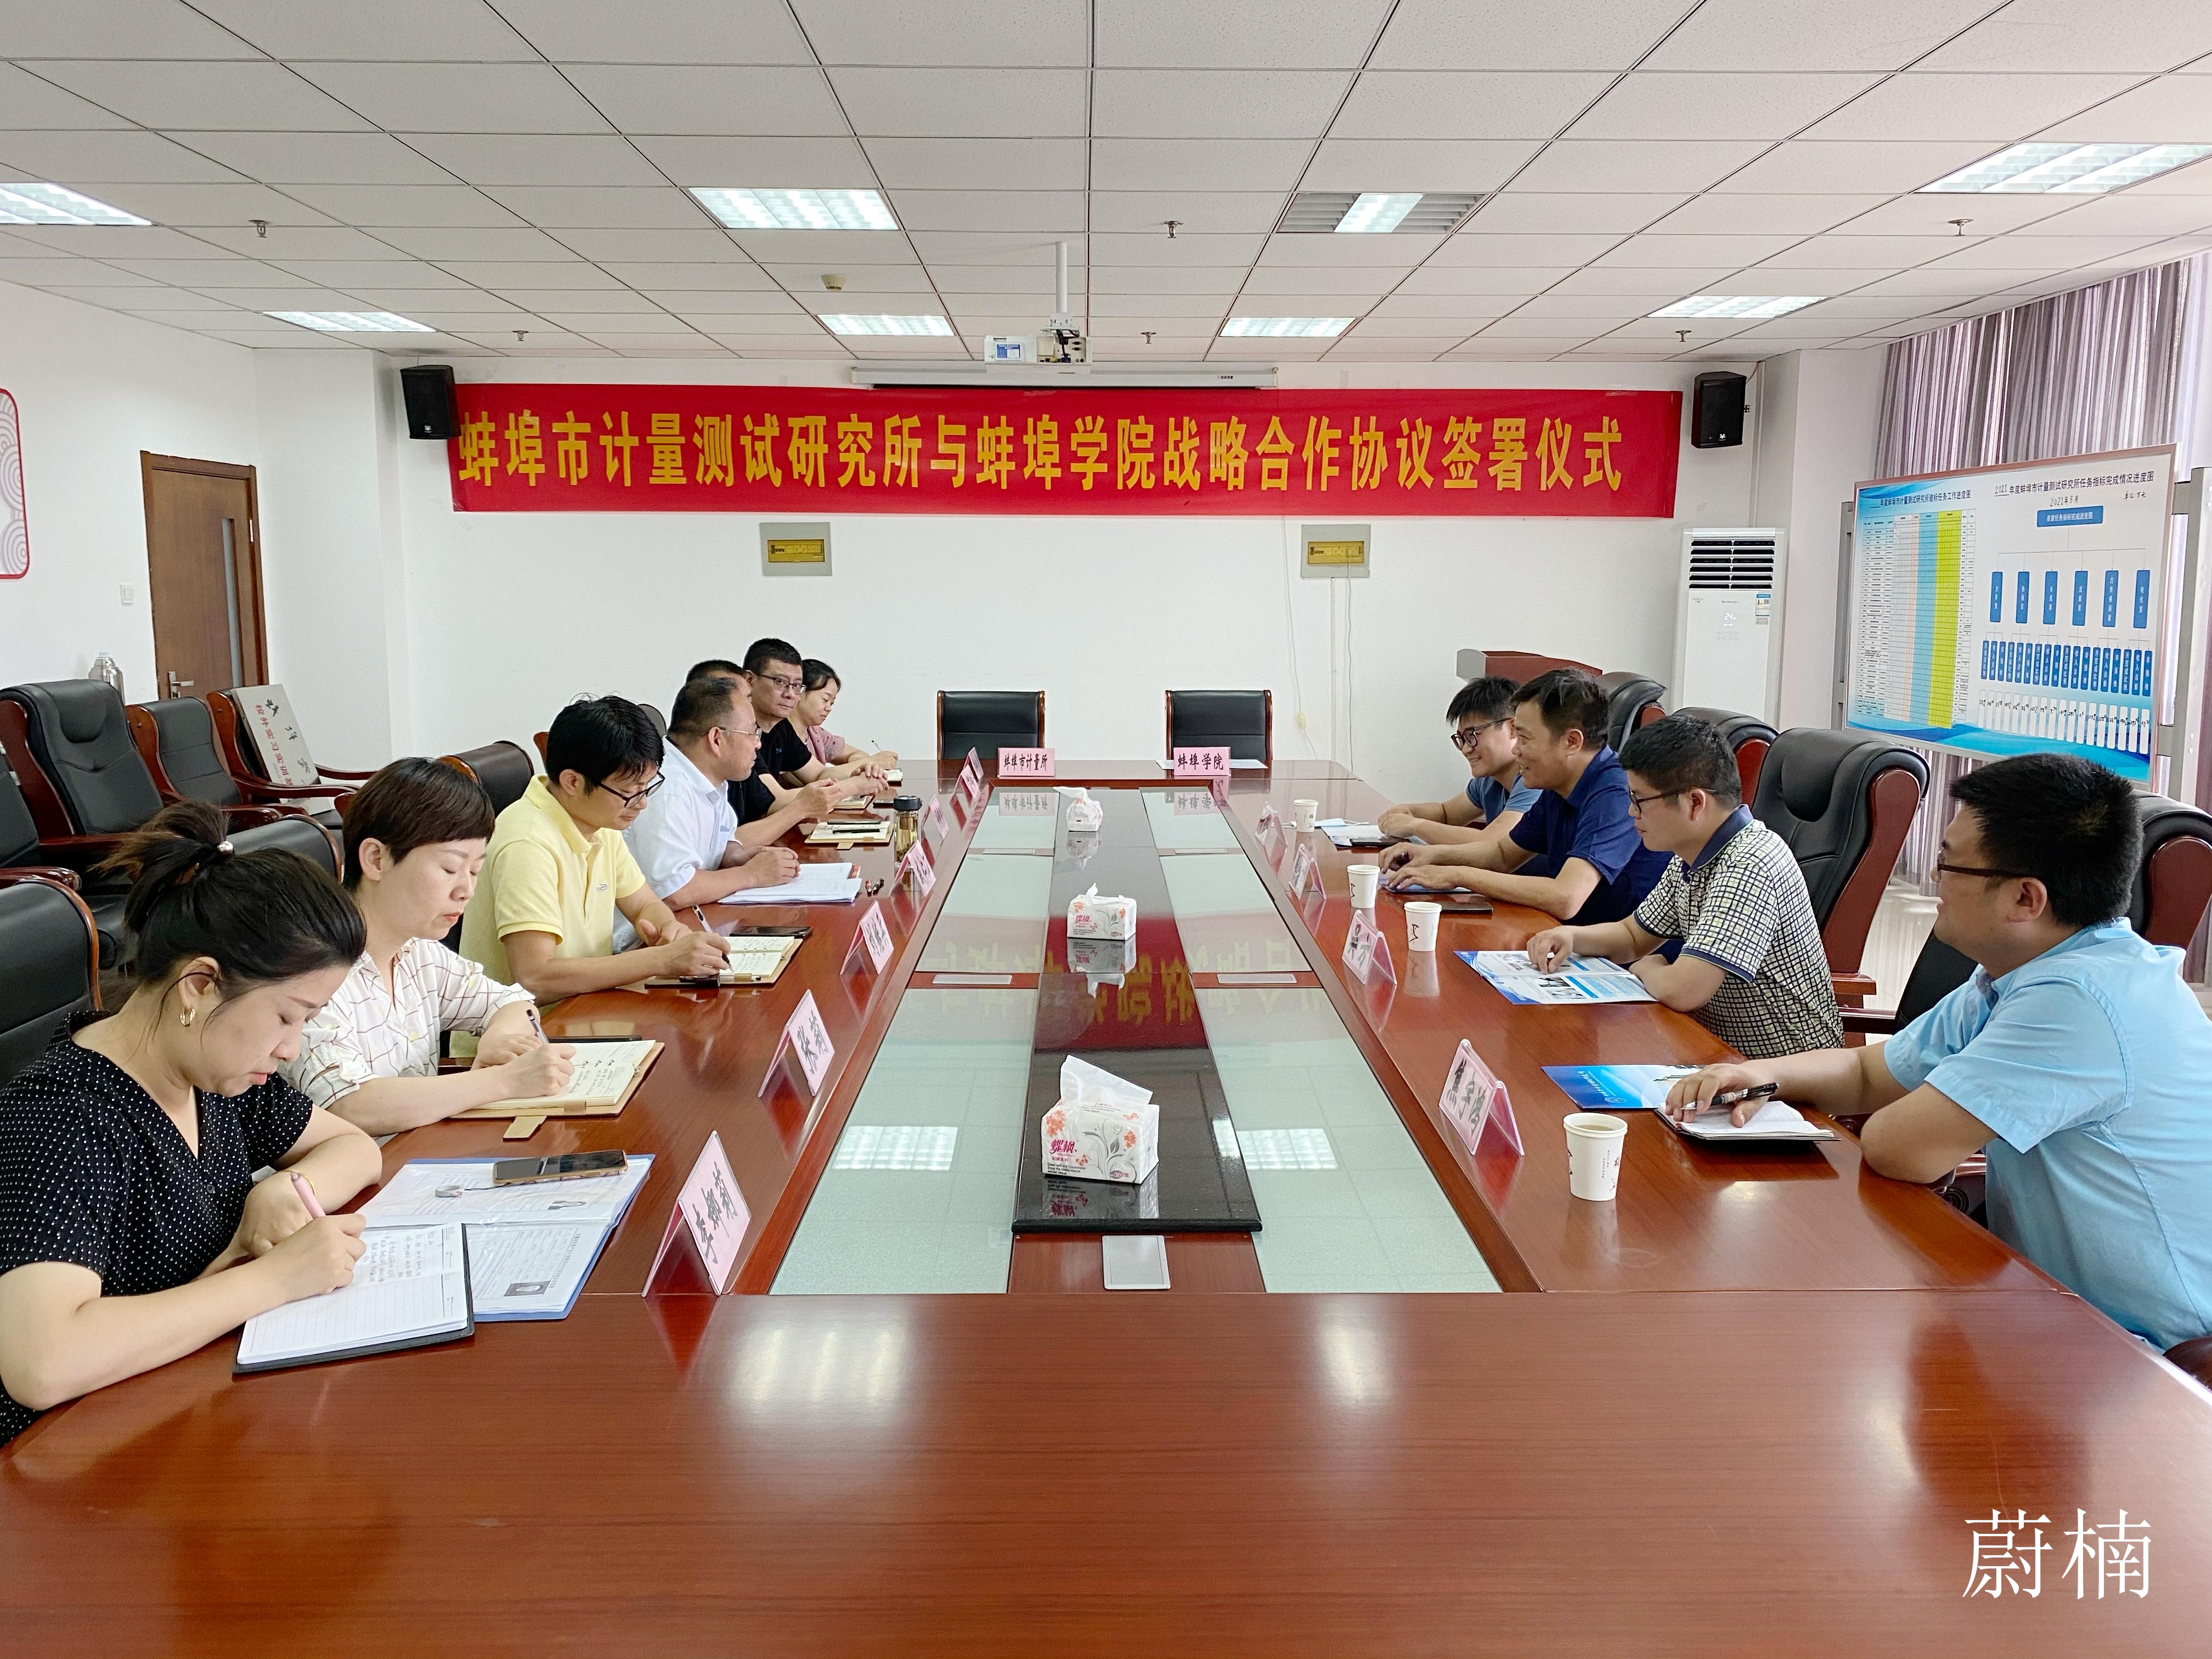 蚌埠市计量所与蚌埠学院签署战略合作协议